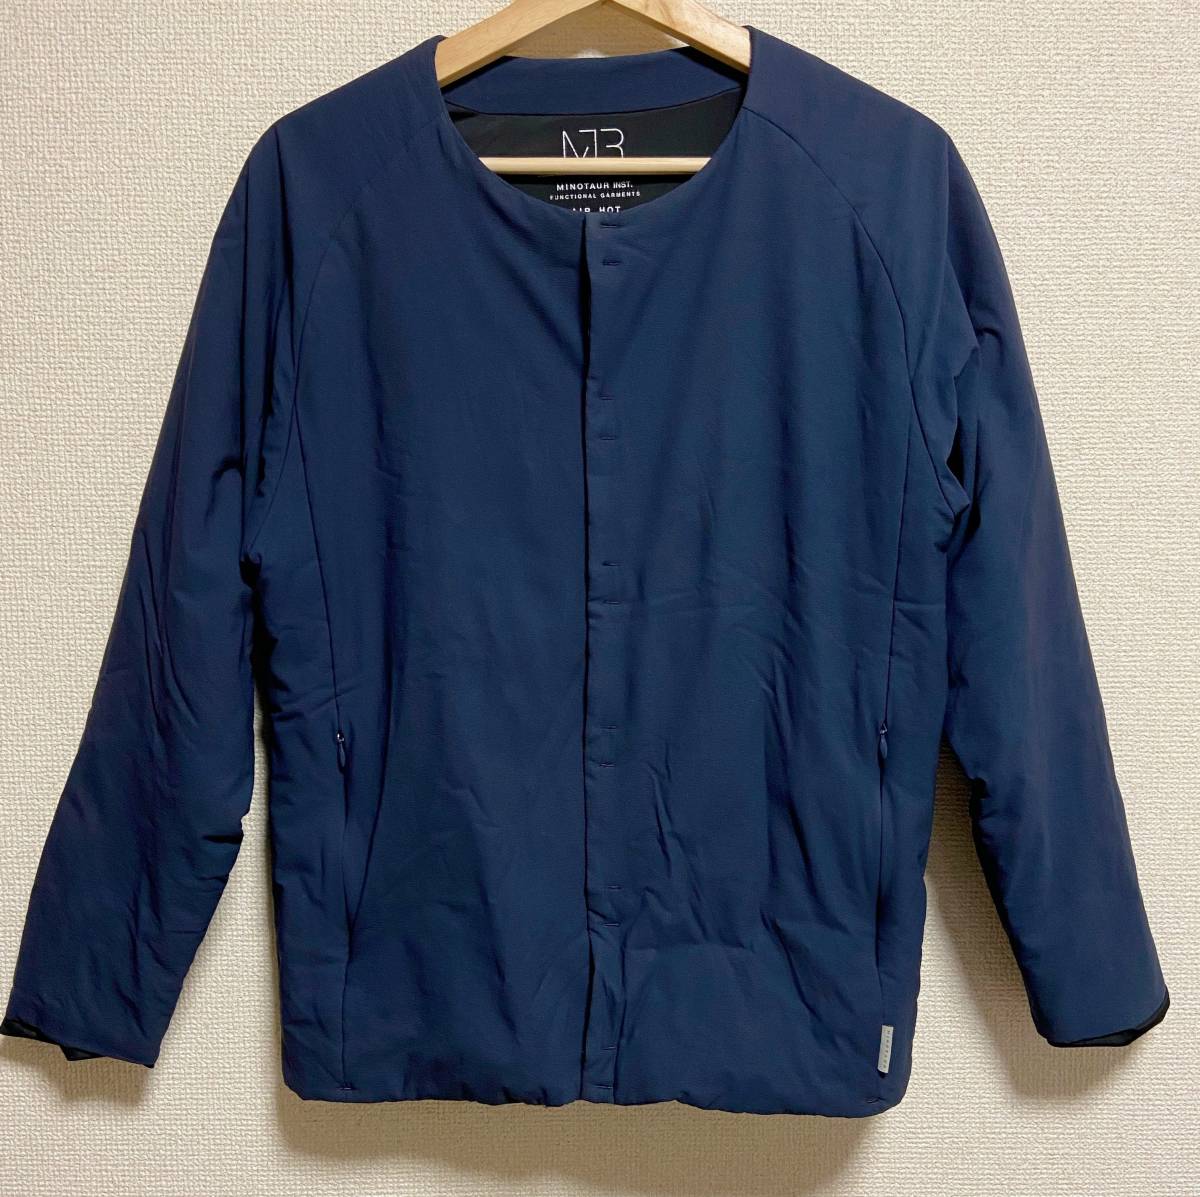  beautiful goods MINOTAUR rumen tall Air Hot Jaket size XS navy blue air hot cotton inside jacket 